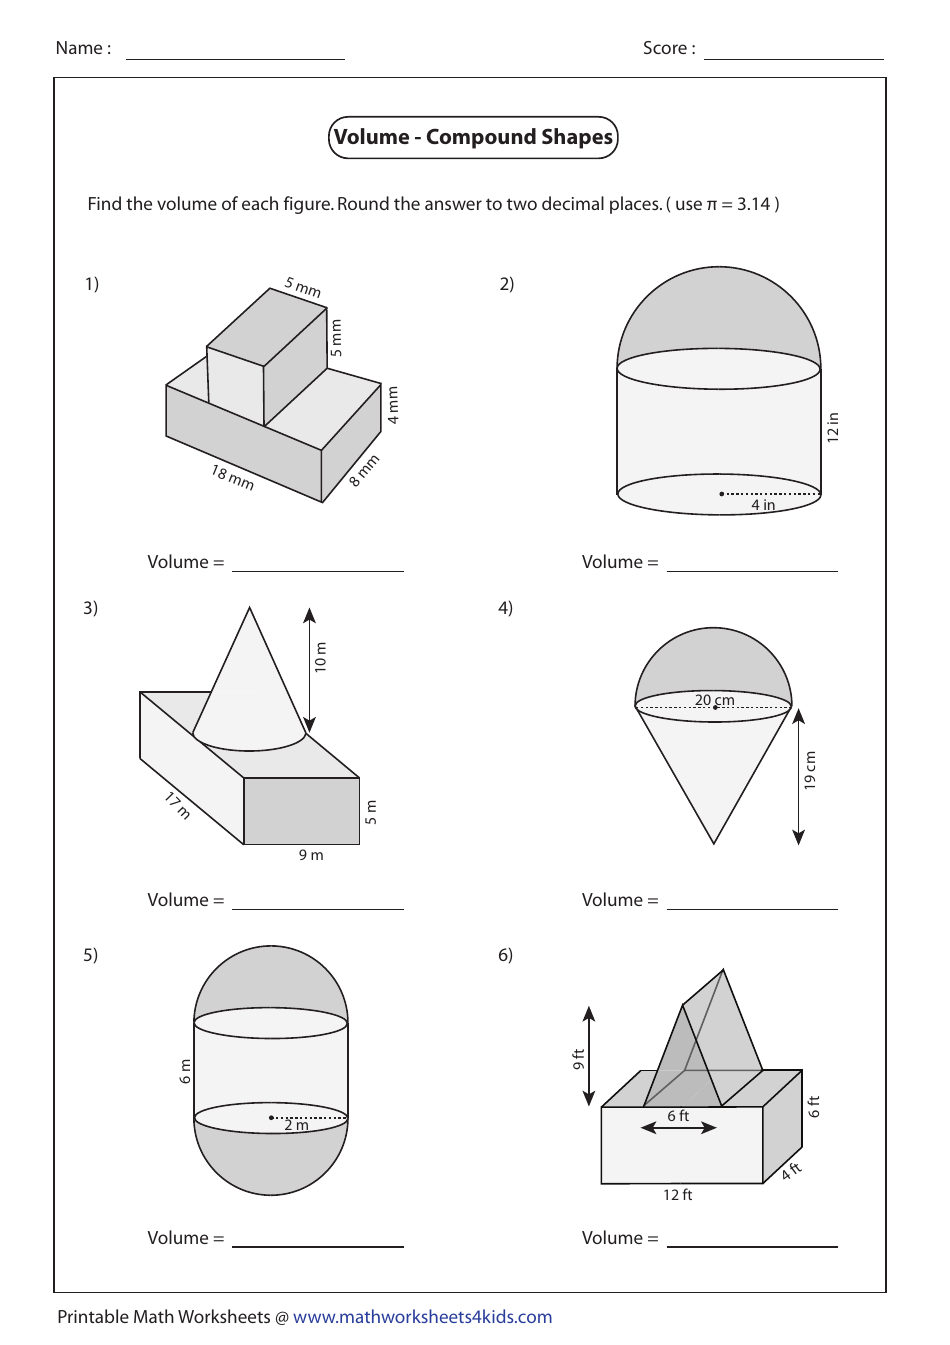 composite-shapes-volume-worksheet